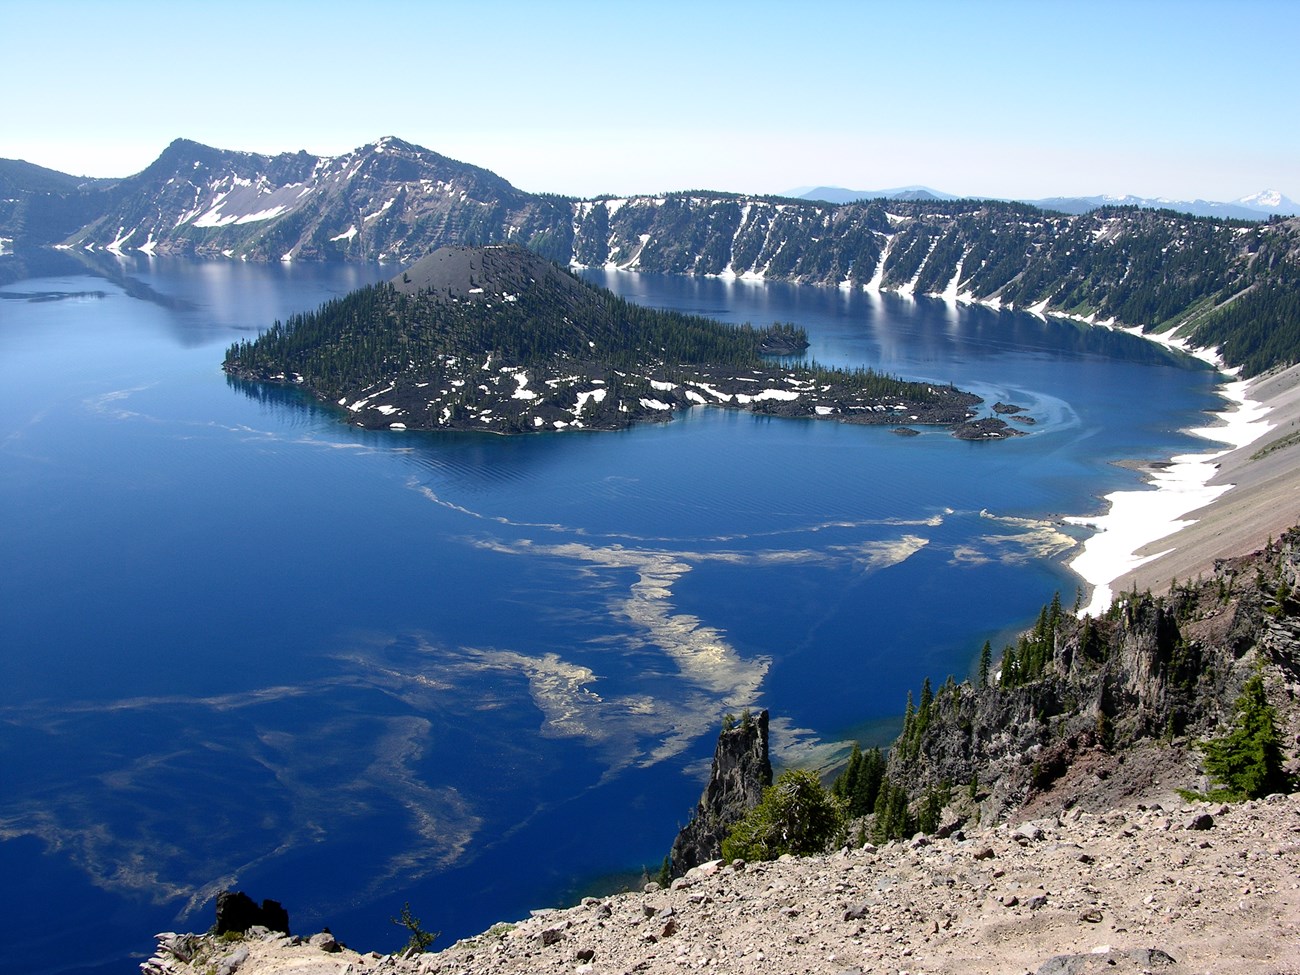 photo of caldera rim and crater lake